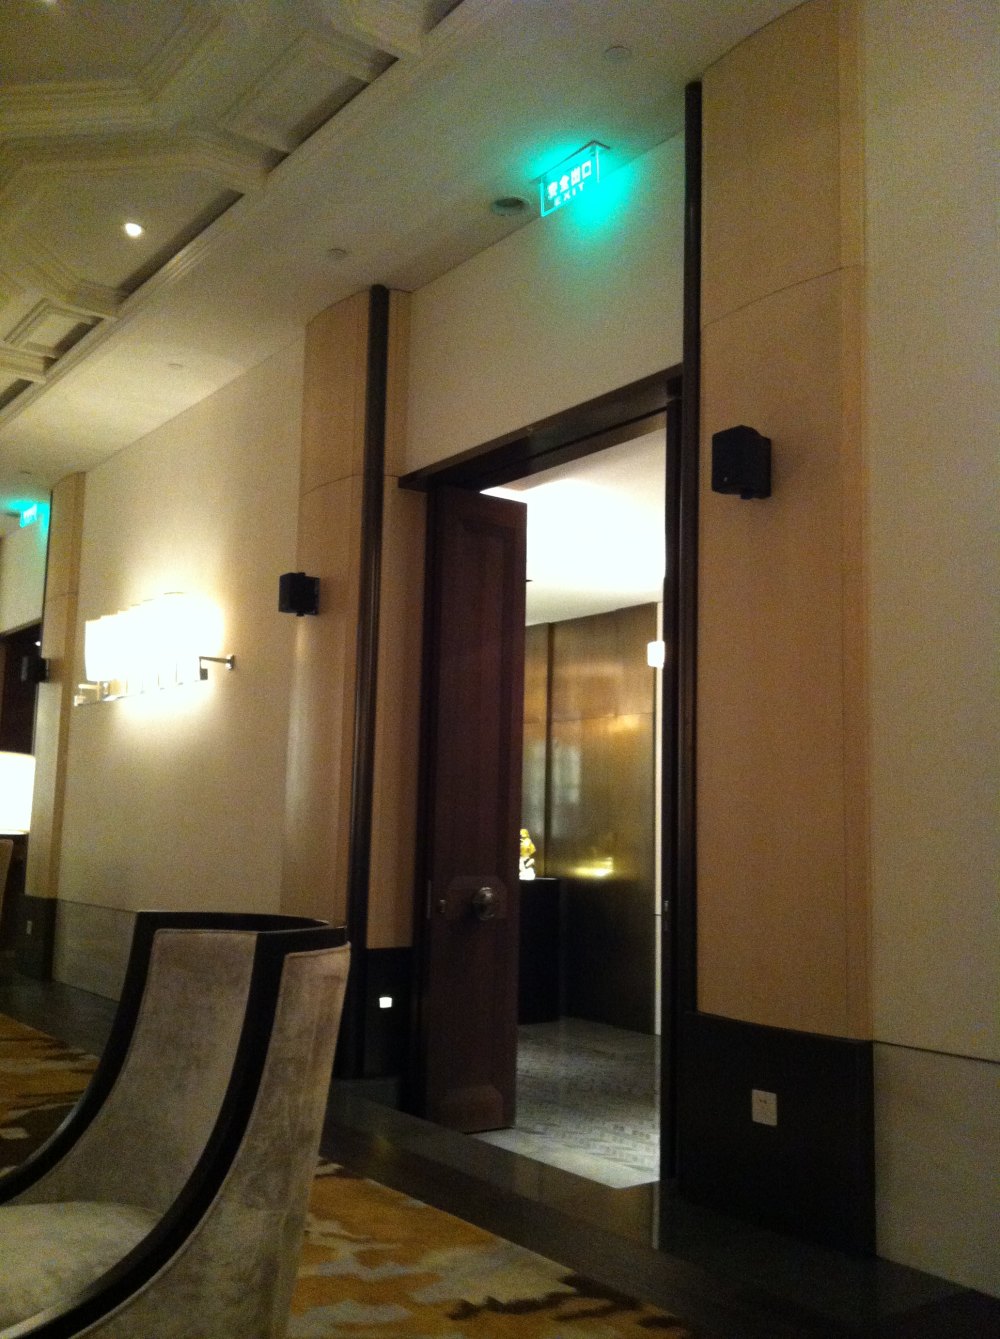 广州文华东方酒店(Mandarin Oriental Hotel)20130613第9页更新_IMG_5017.JPG